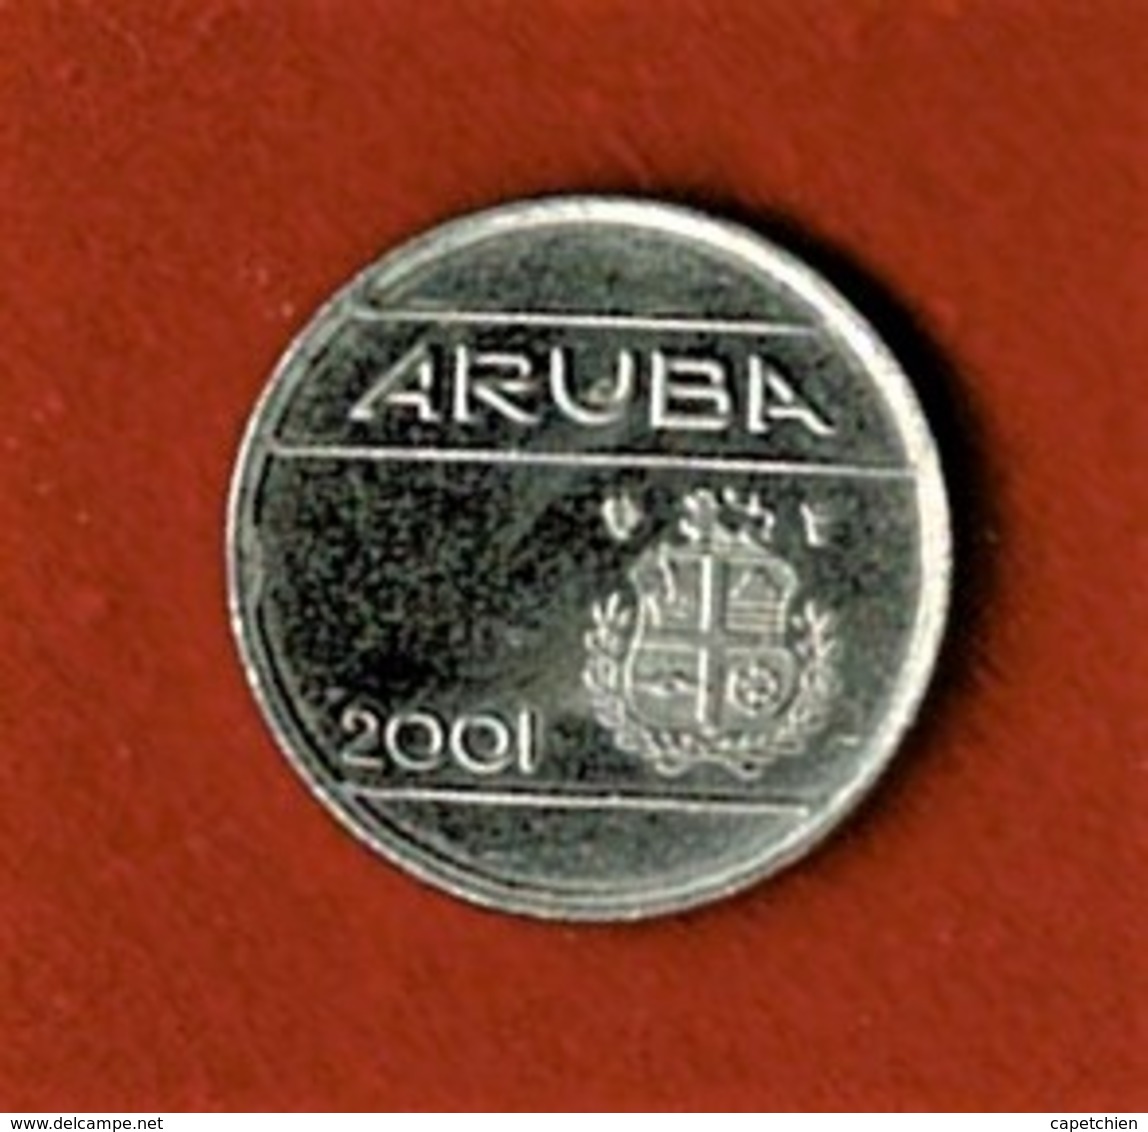 ARUBA / ILE NEERLANDAISE DES CARAIBES / 5 C. / 2001 - Andere - Amerika